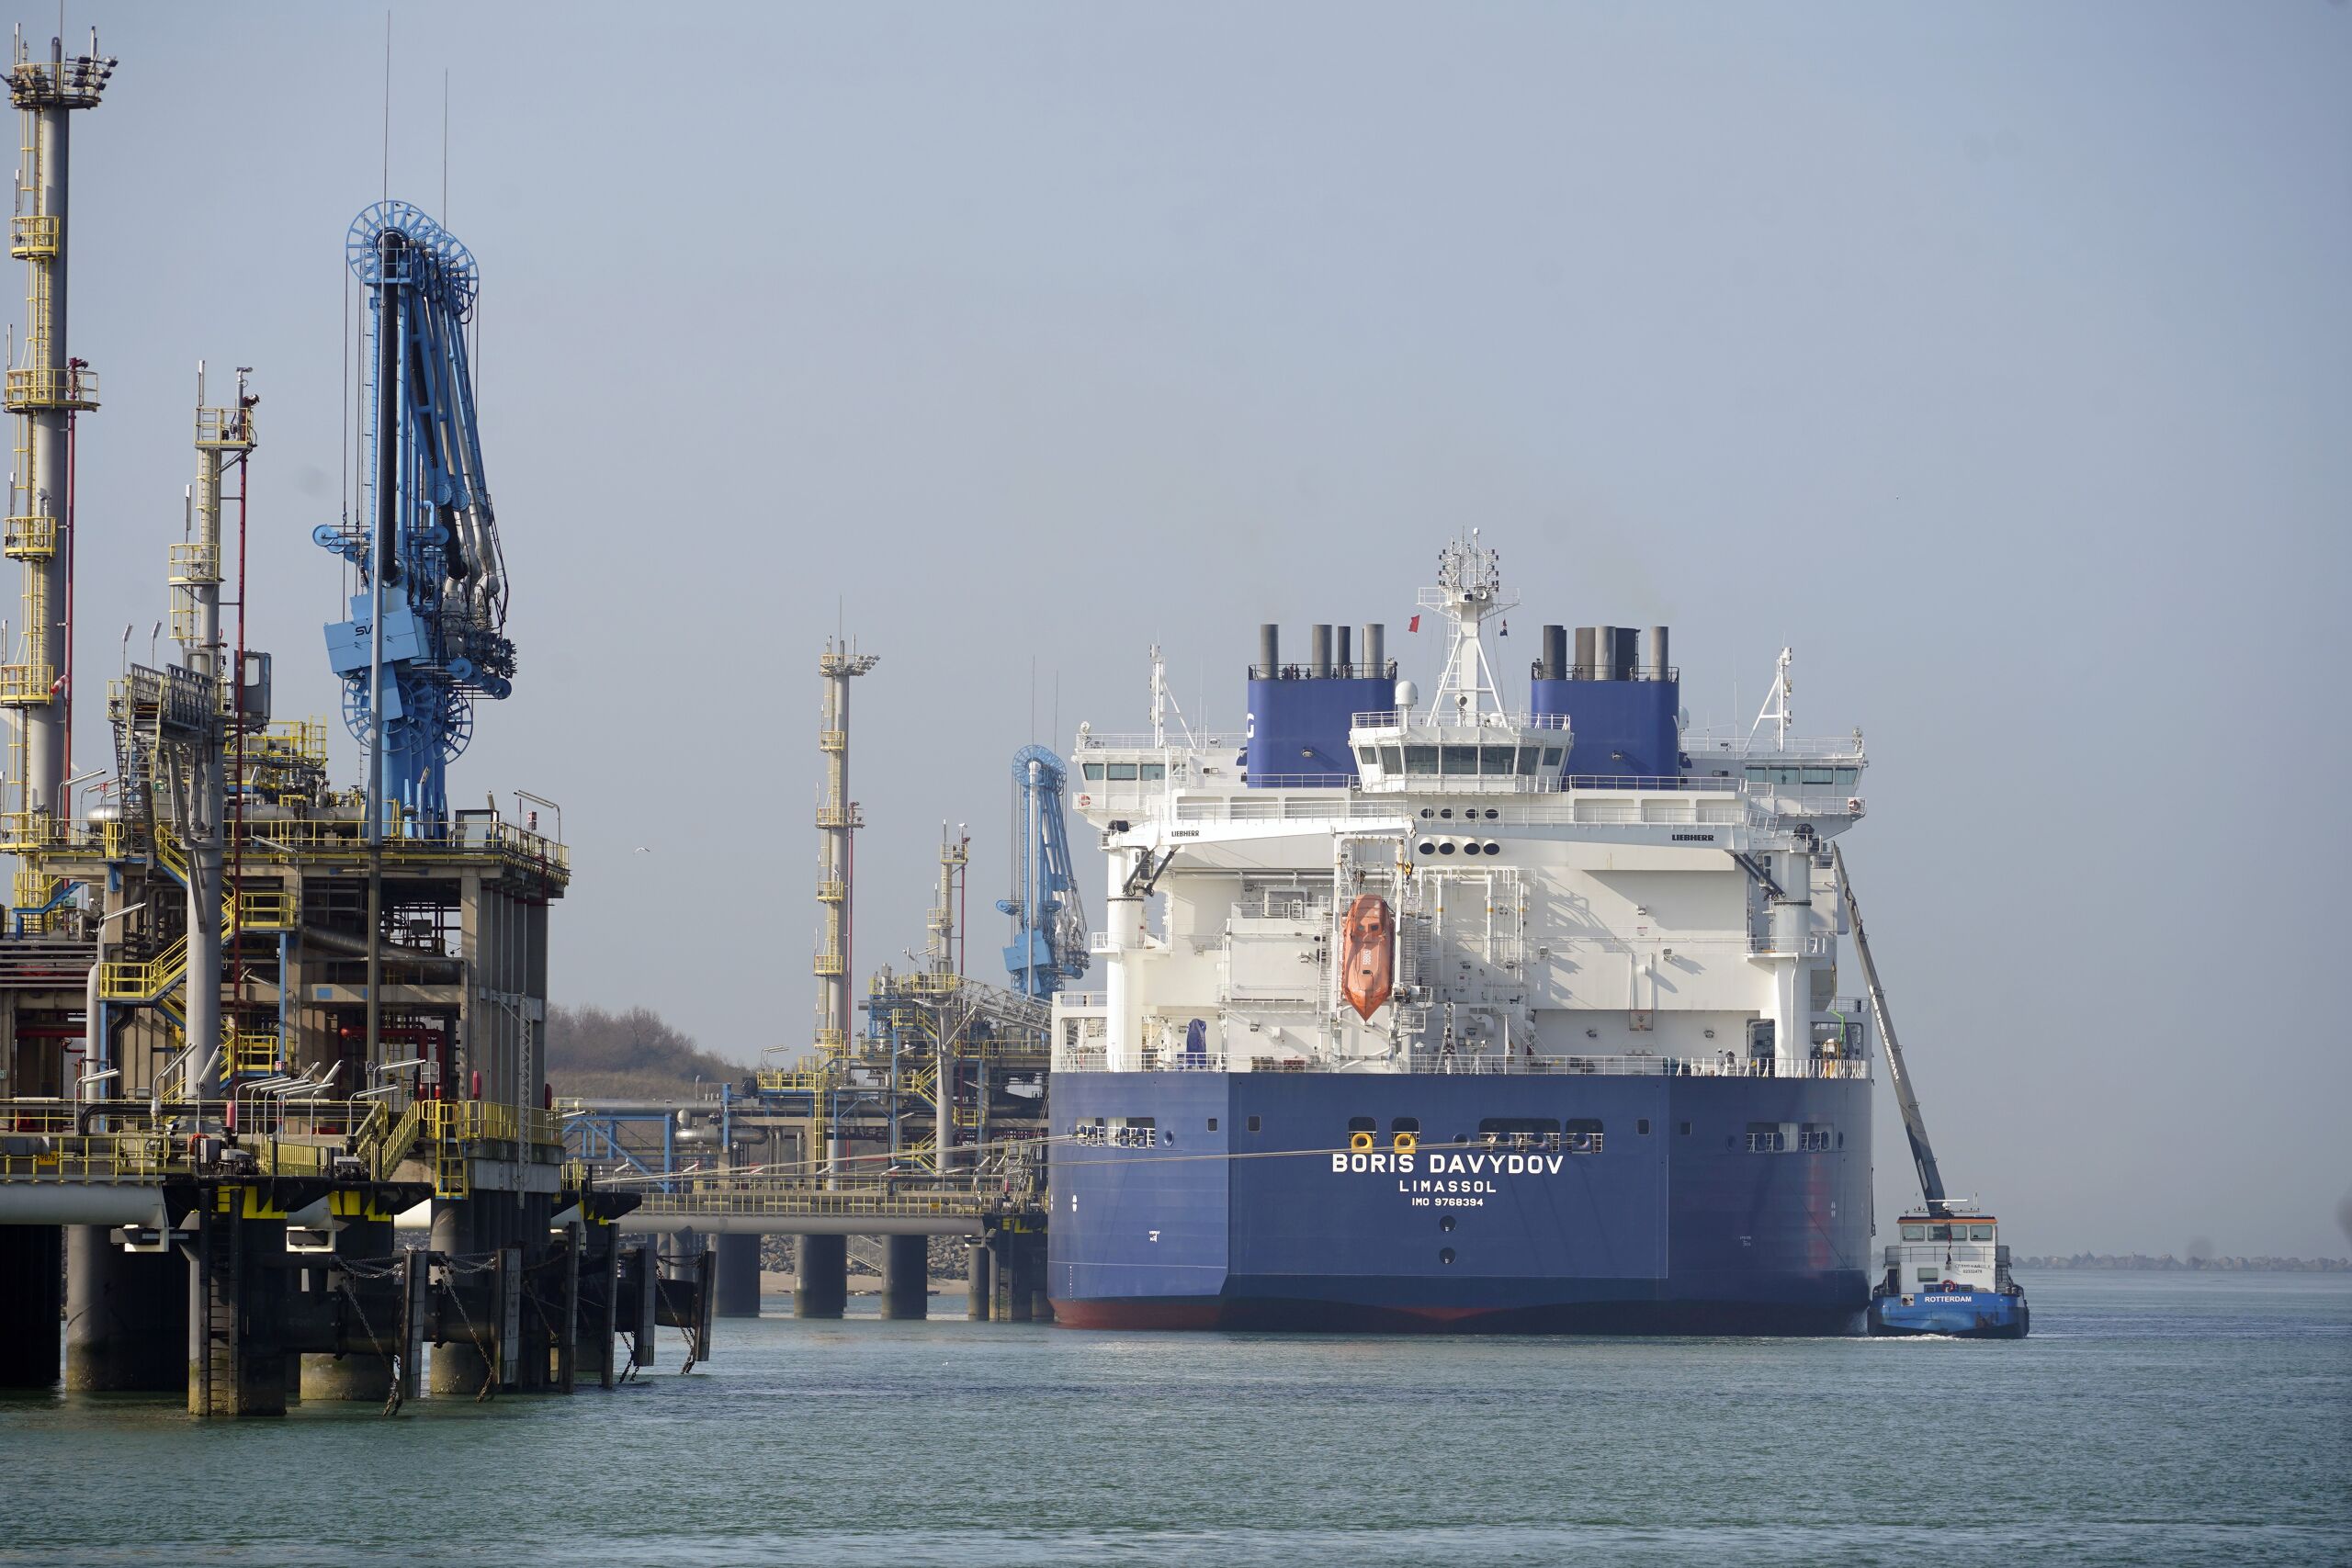 Russische LNG-tanker Boris Davydov levert vloeibaar gas aan de LNG-terminal op de Maasvlakte 